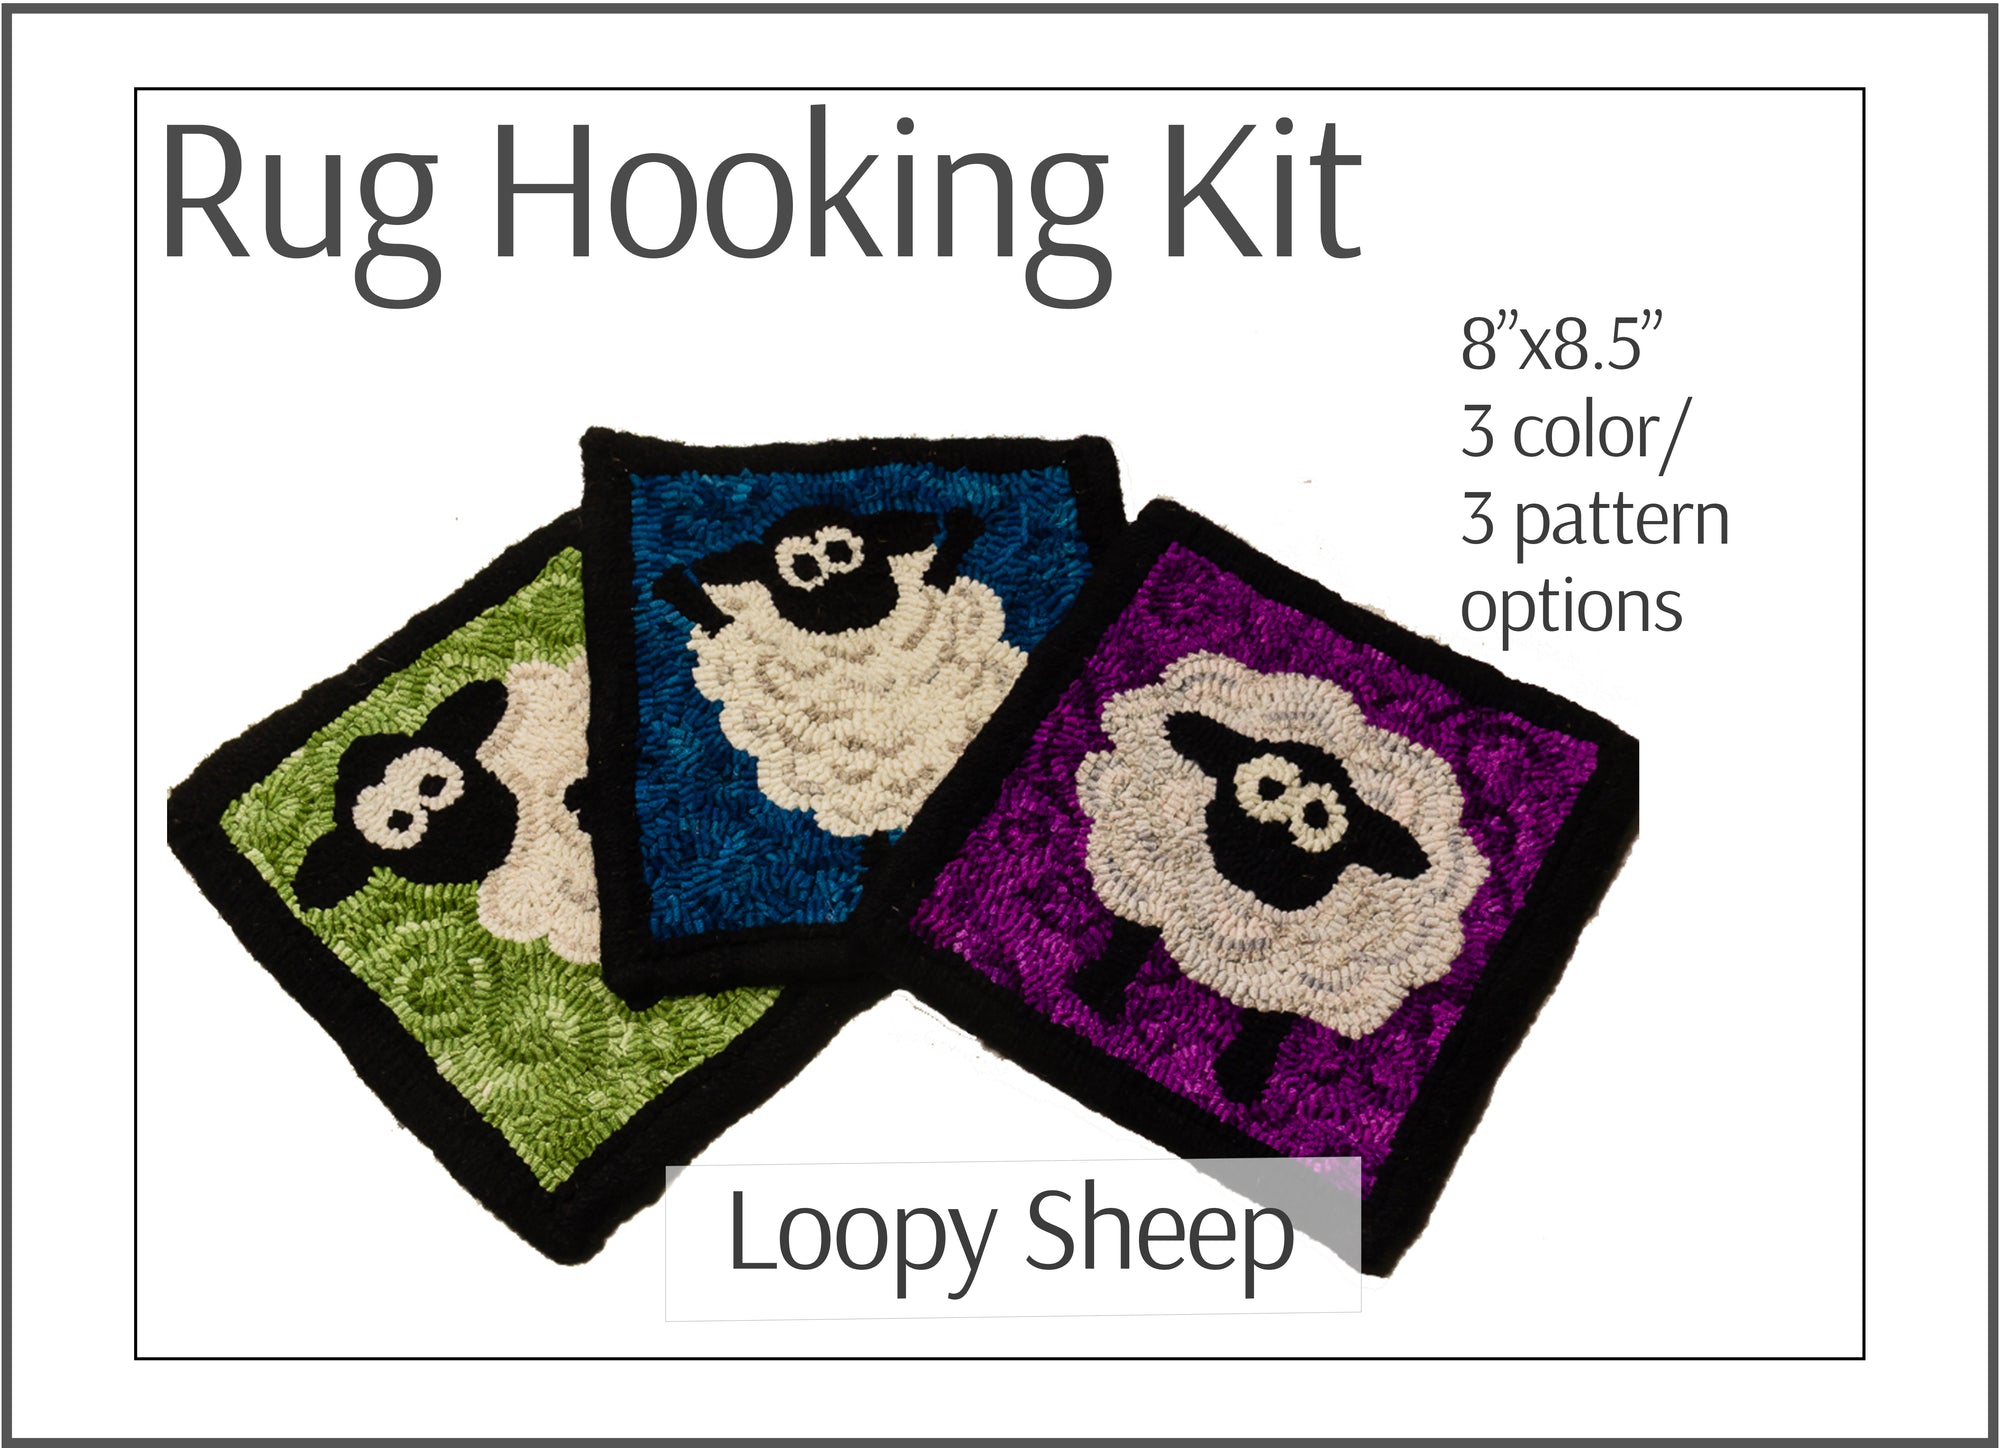 Loopy Sheep Rug Hooking Kit